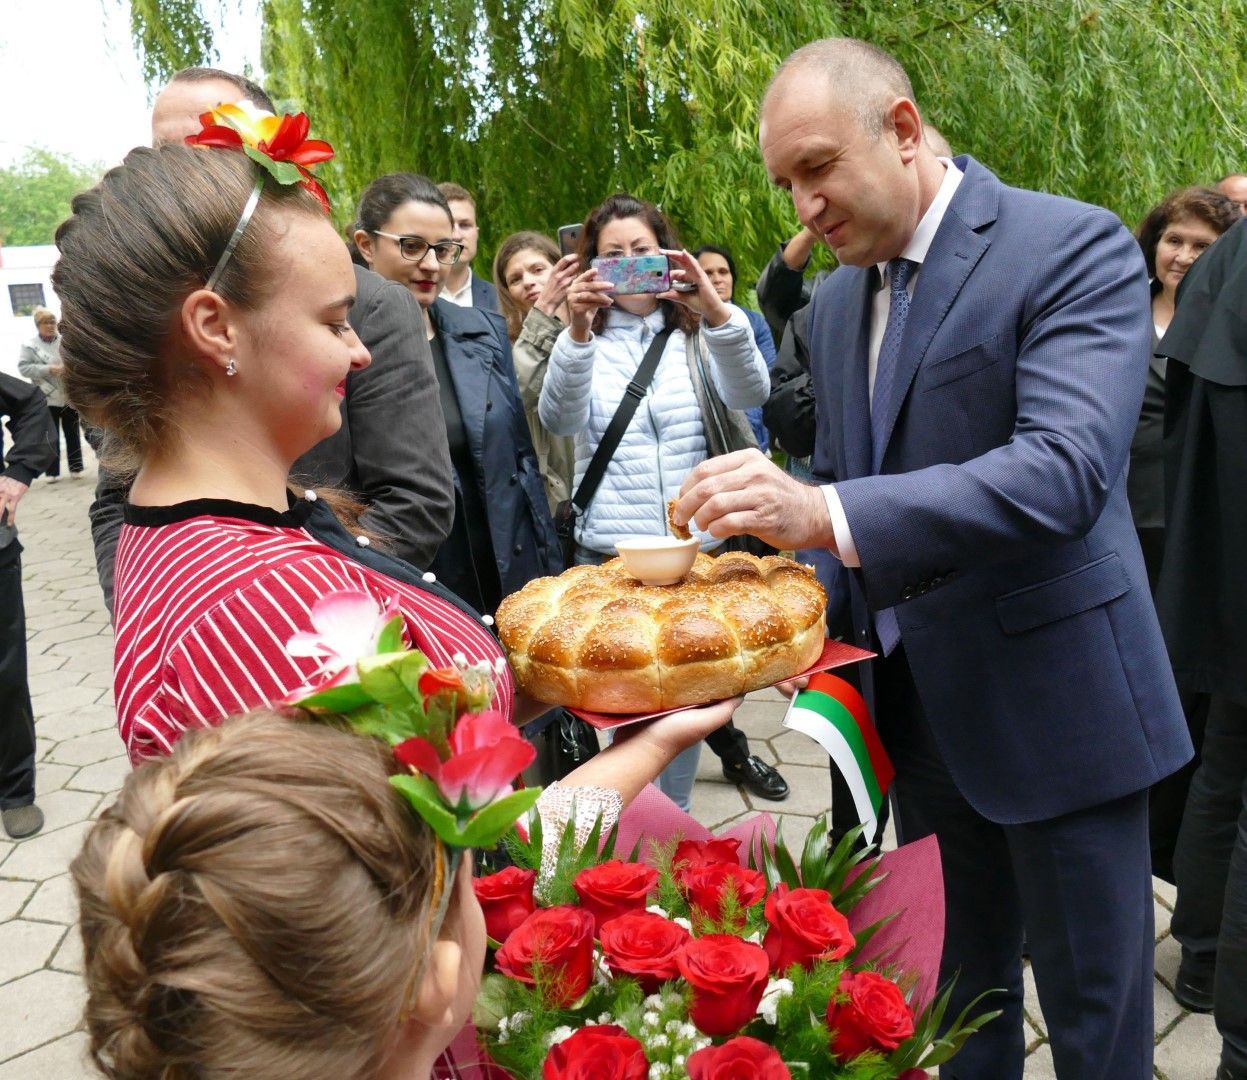 Държавният глава Румен Радев посети Института по растителни и генетични ресурси "Константин Малков", където разговаря с ръководството и се запозна с процеса по съхраняване на семена и лабораториите на института